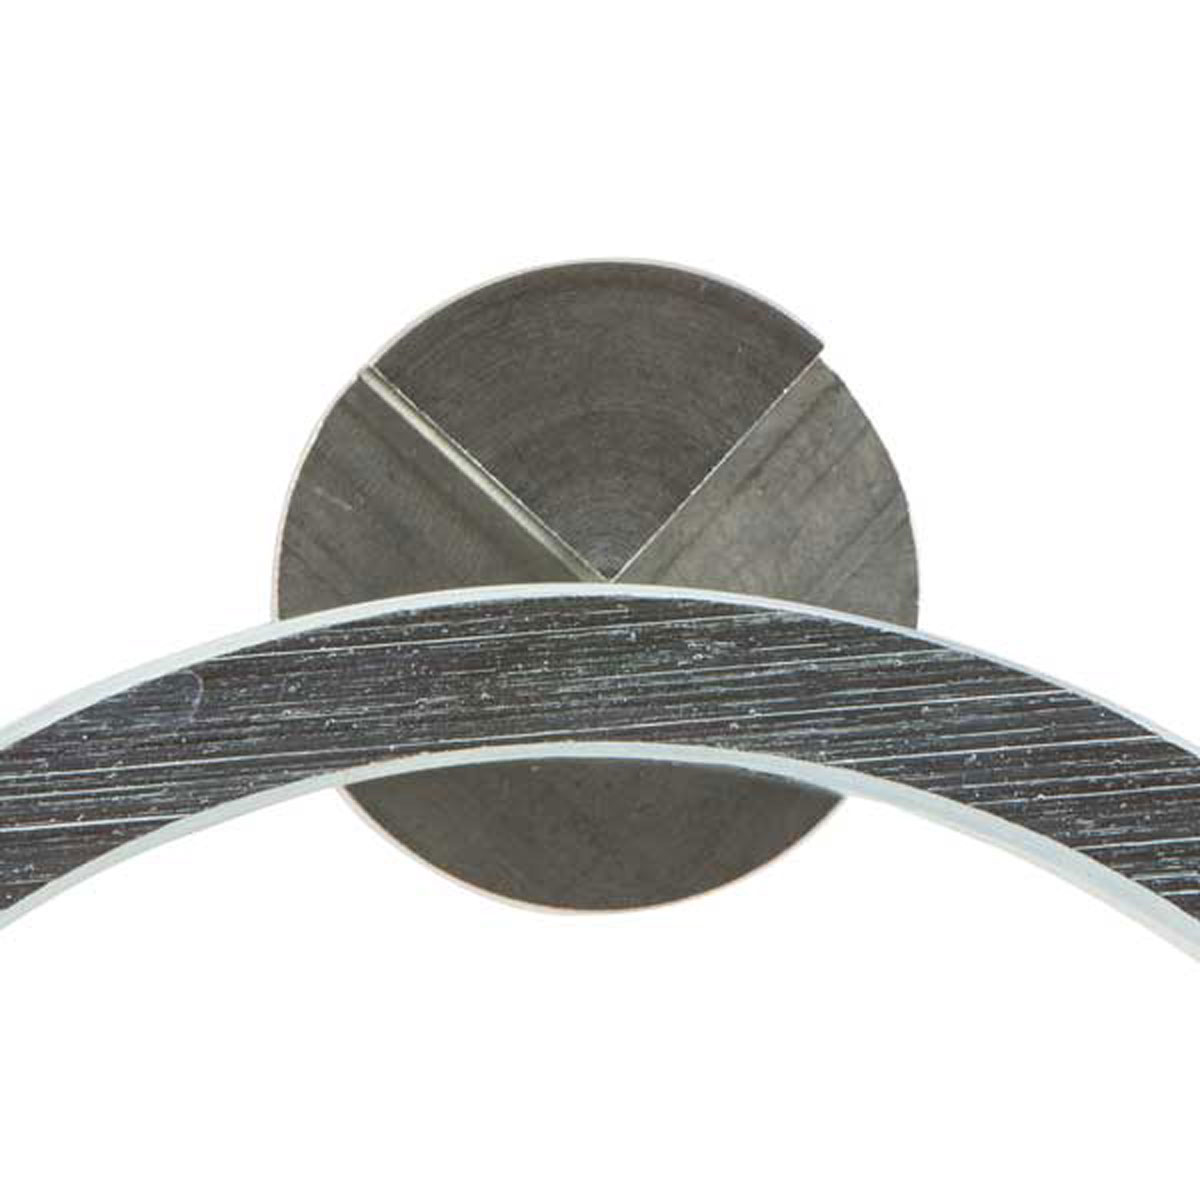 Kugel-Basis "Kontur" Ø 1,5" mit Magnet, Höhenoffset HO: 25 mm